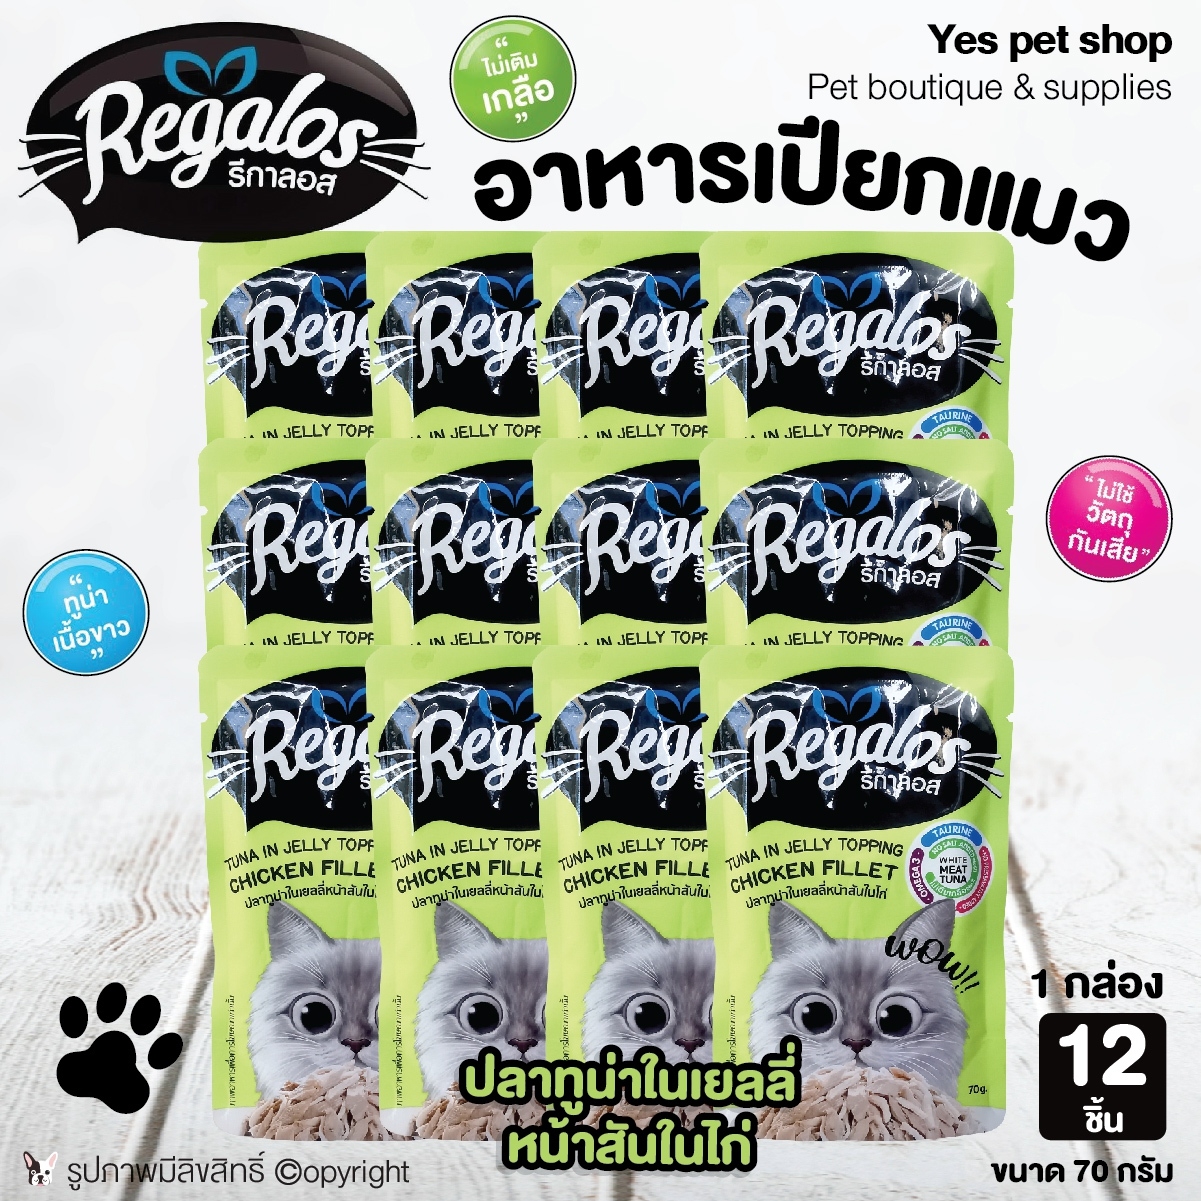 (12 ซอง) อาหารแมวแบบเปียก Regalos รีกาลอส รสปลาทูน่าในเยลลี่หน้าสันในไก่ ขนาด 70 กรัม โดย Yes Pet Shop